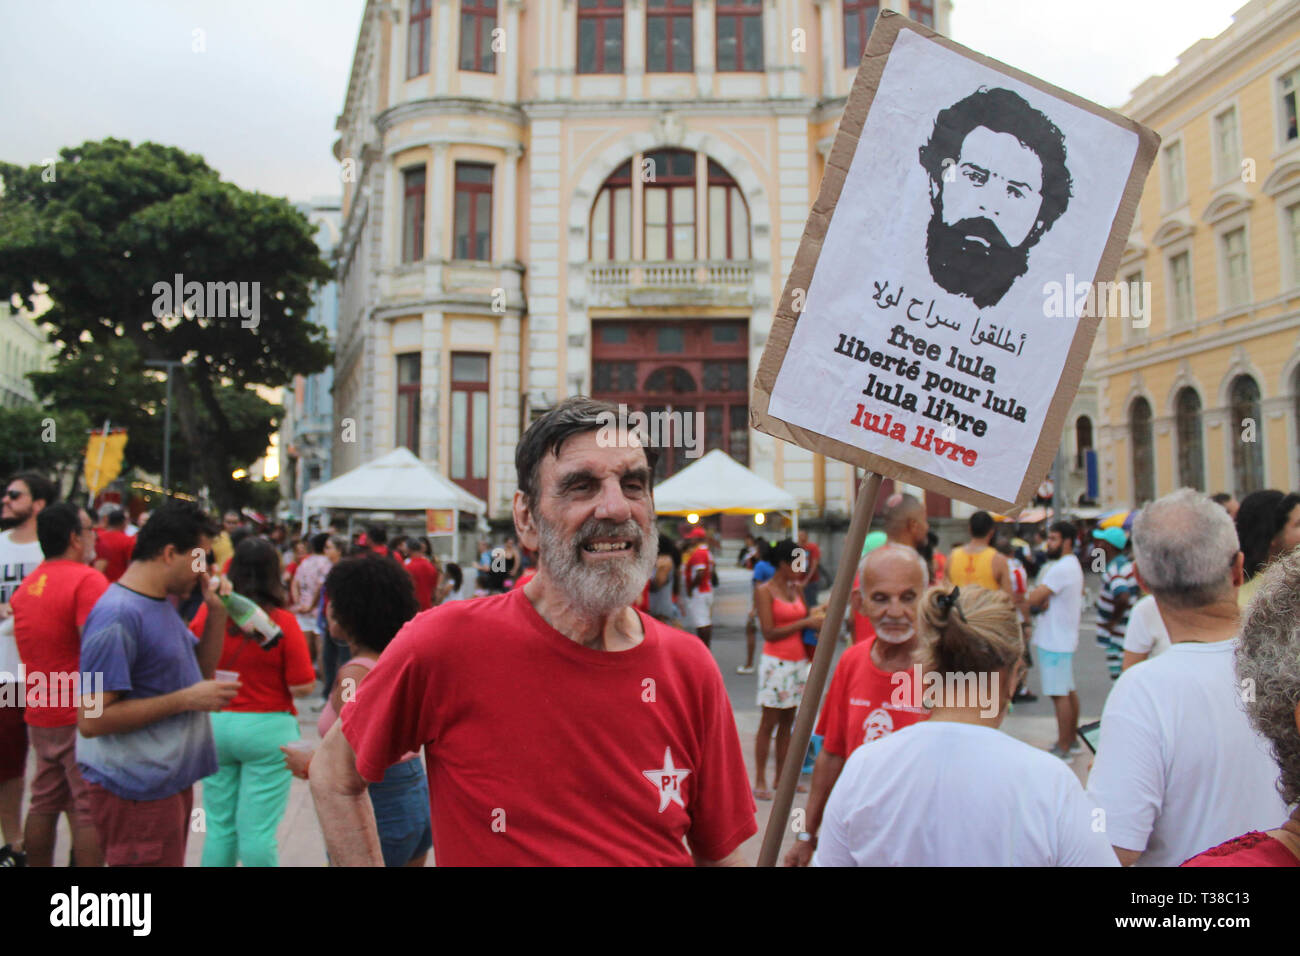 RECIFE, PE - 07.04.2019 : JORNADA LULA LIVRE NO RECIFE - Loi intitulée "Jda Lul Lula Livre de Recife ; tenue en faveur de l'ancien Président Lula freeof thisthis qui termine le 7 avril, une année de tical persecrsecution selon les militants qui appellent également à la poursuite de la lutte pour la démocratie, la justice. La loi prend place dans l'Arsenal de la place de la Marine, dans le quartier de Recife, également connu comme le "Vieux Recife" au début de la loi était à 15h00 entre les attractions ; Carl courtshi ; blocs de ciranda, Ma, Maracatu Rural, amongmong de nombreuses autres attractions. (Ph Banque D'Images